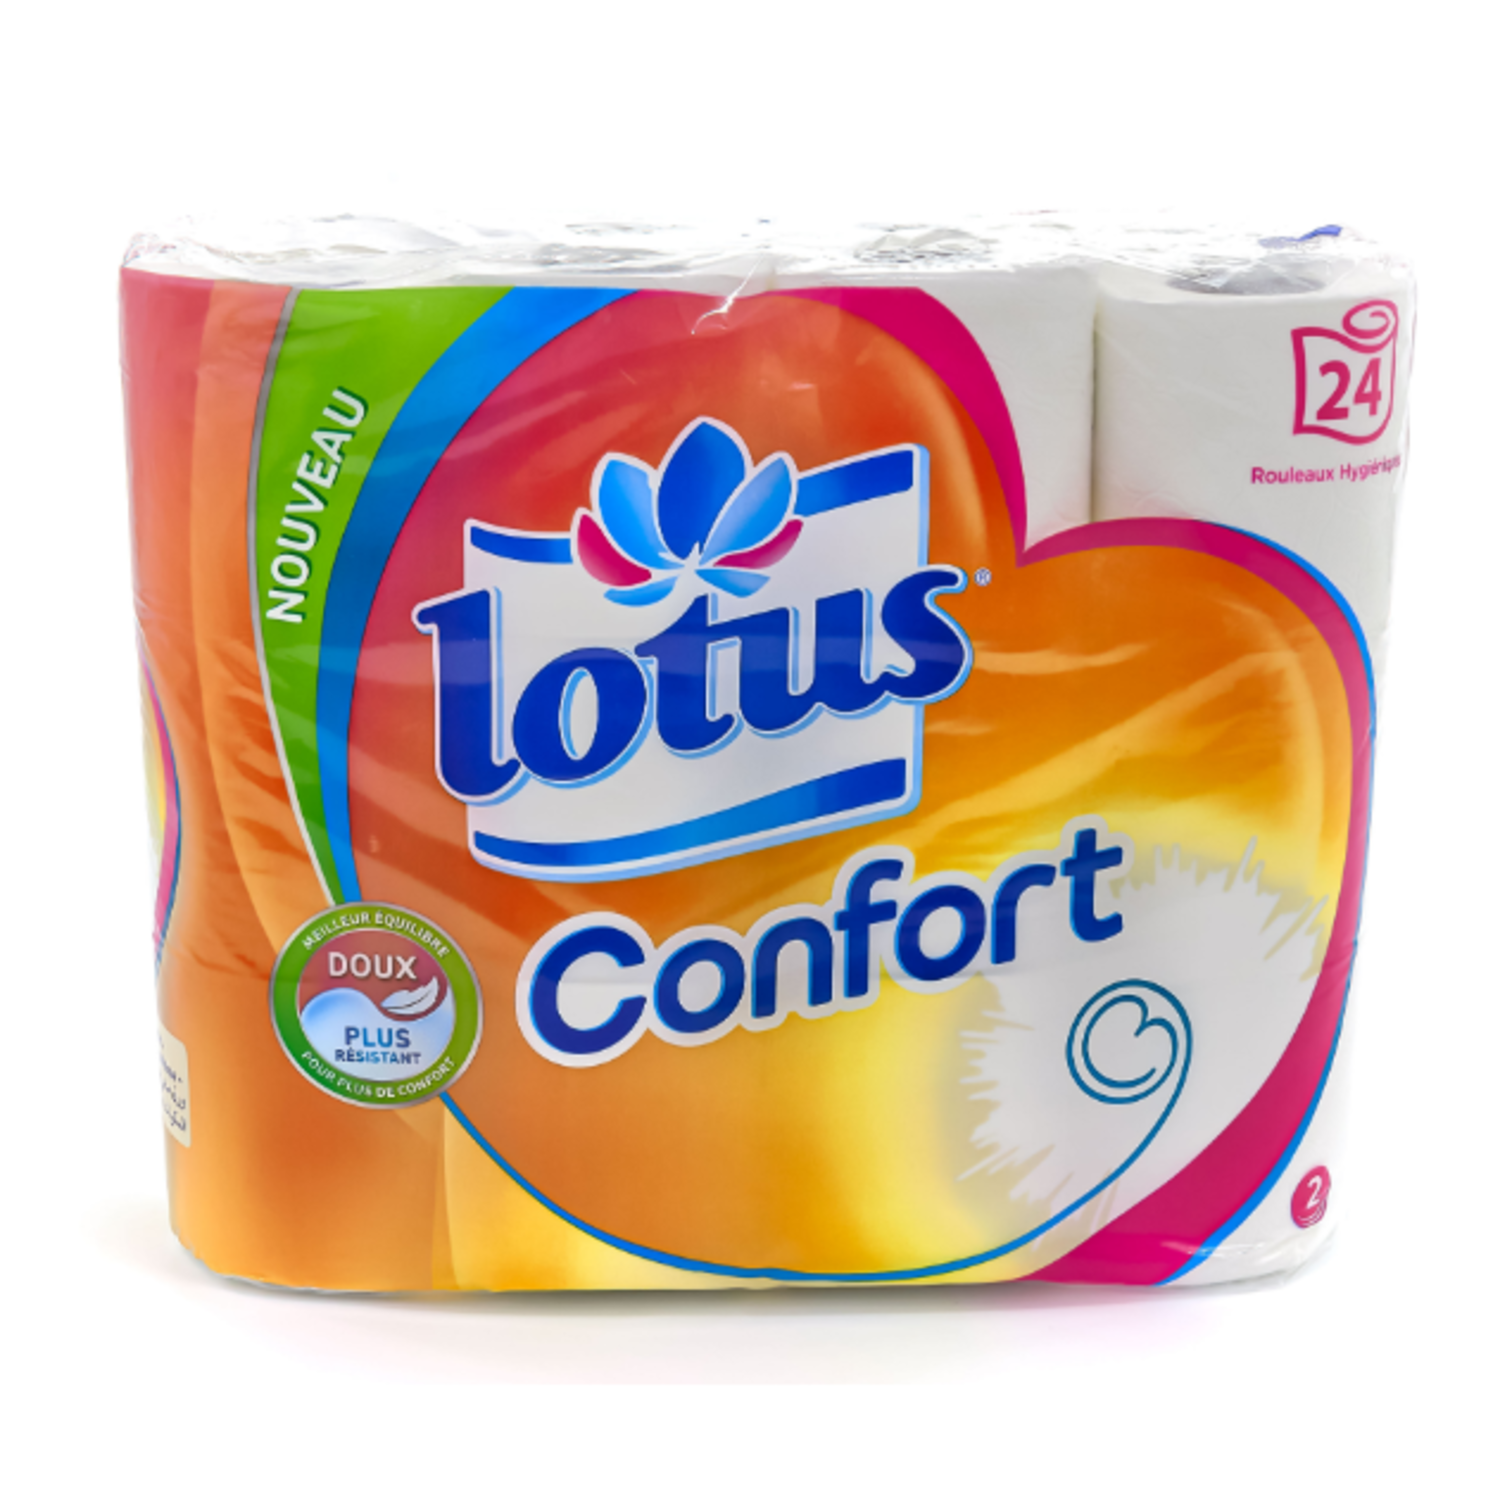 Papier toilette Lotus Confort Collection - Lotus